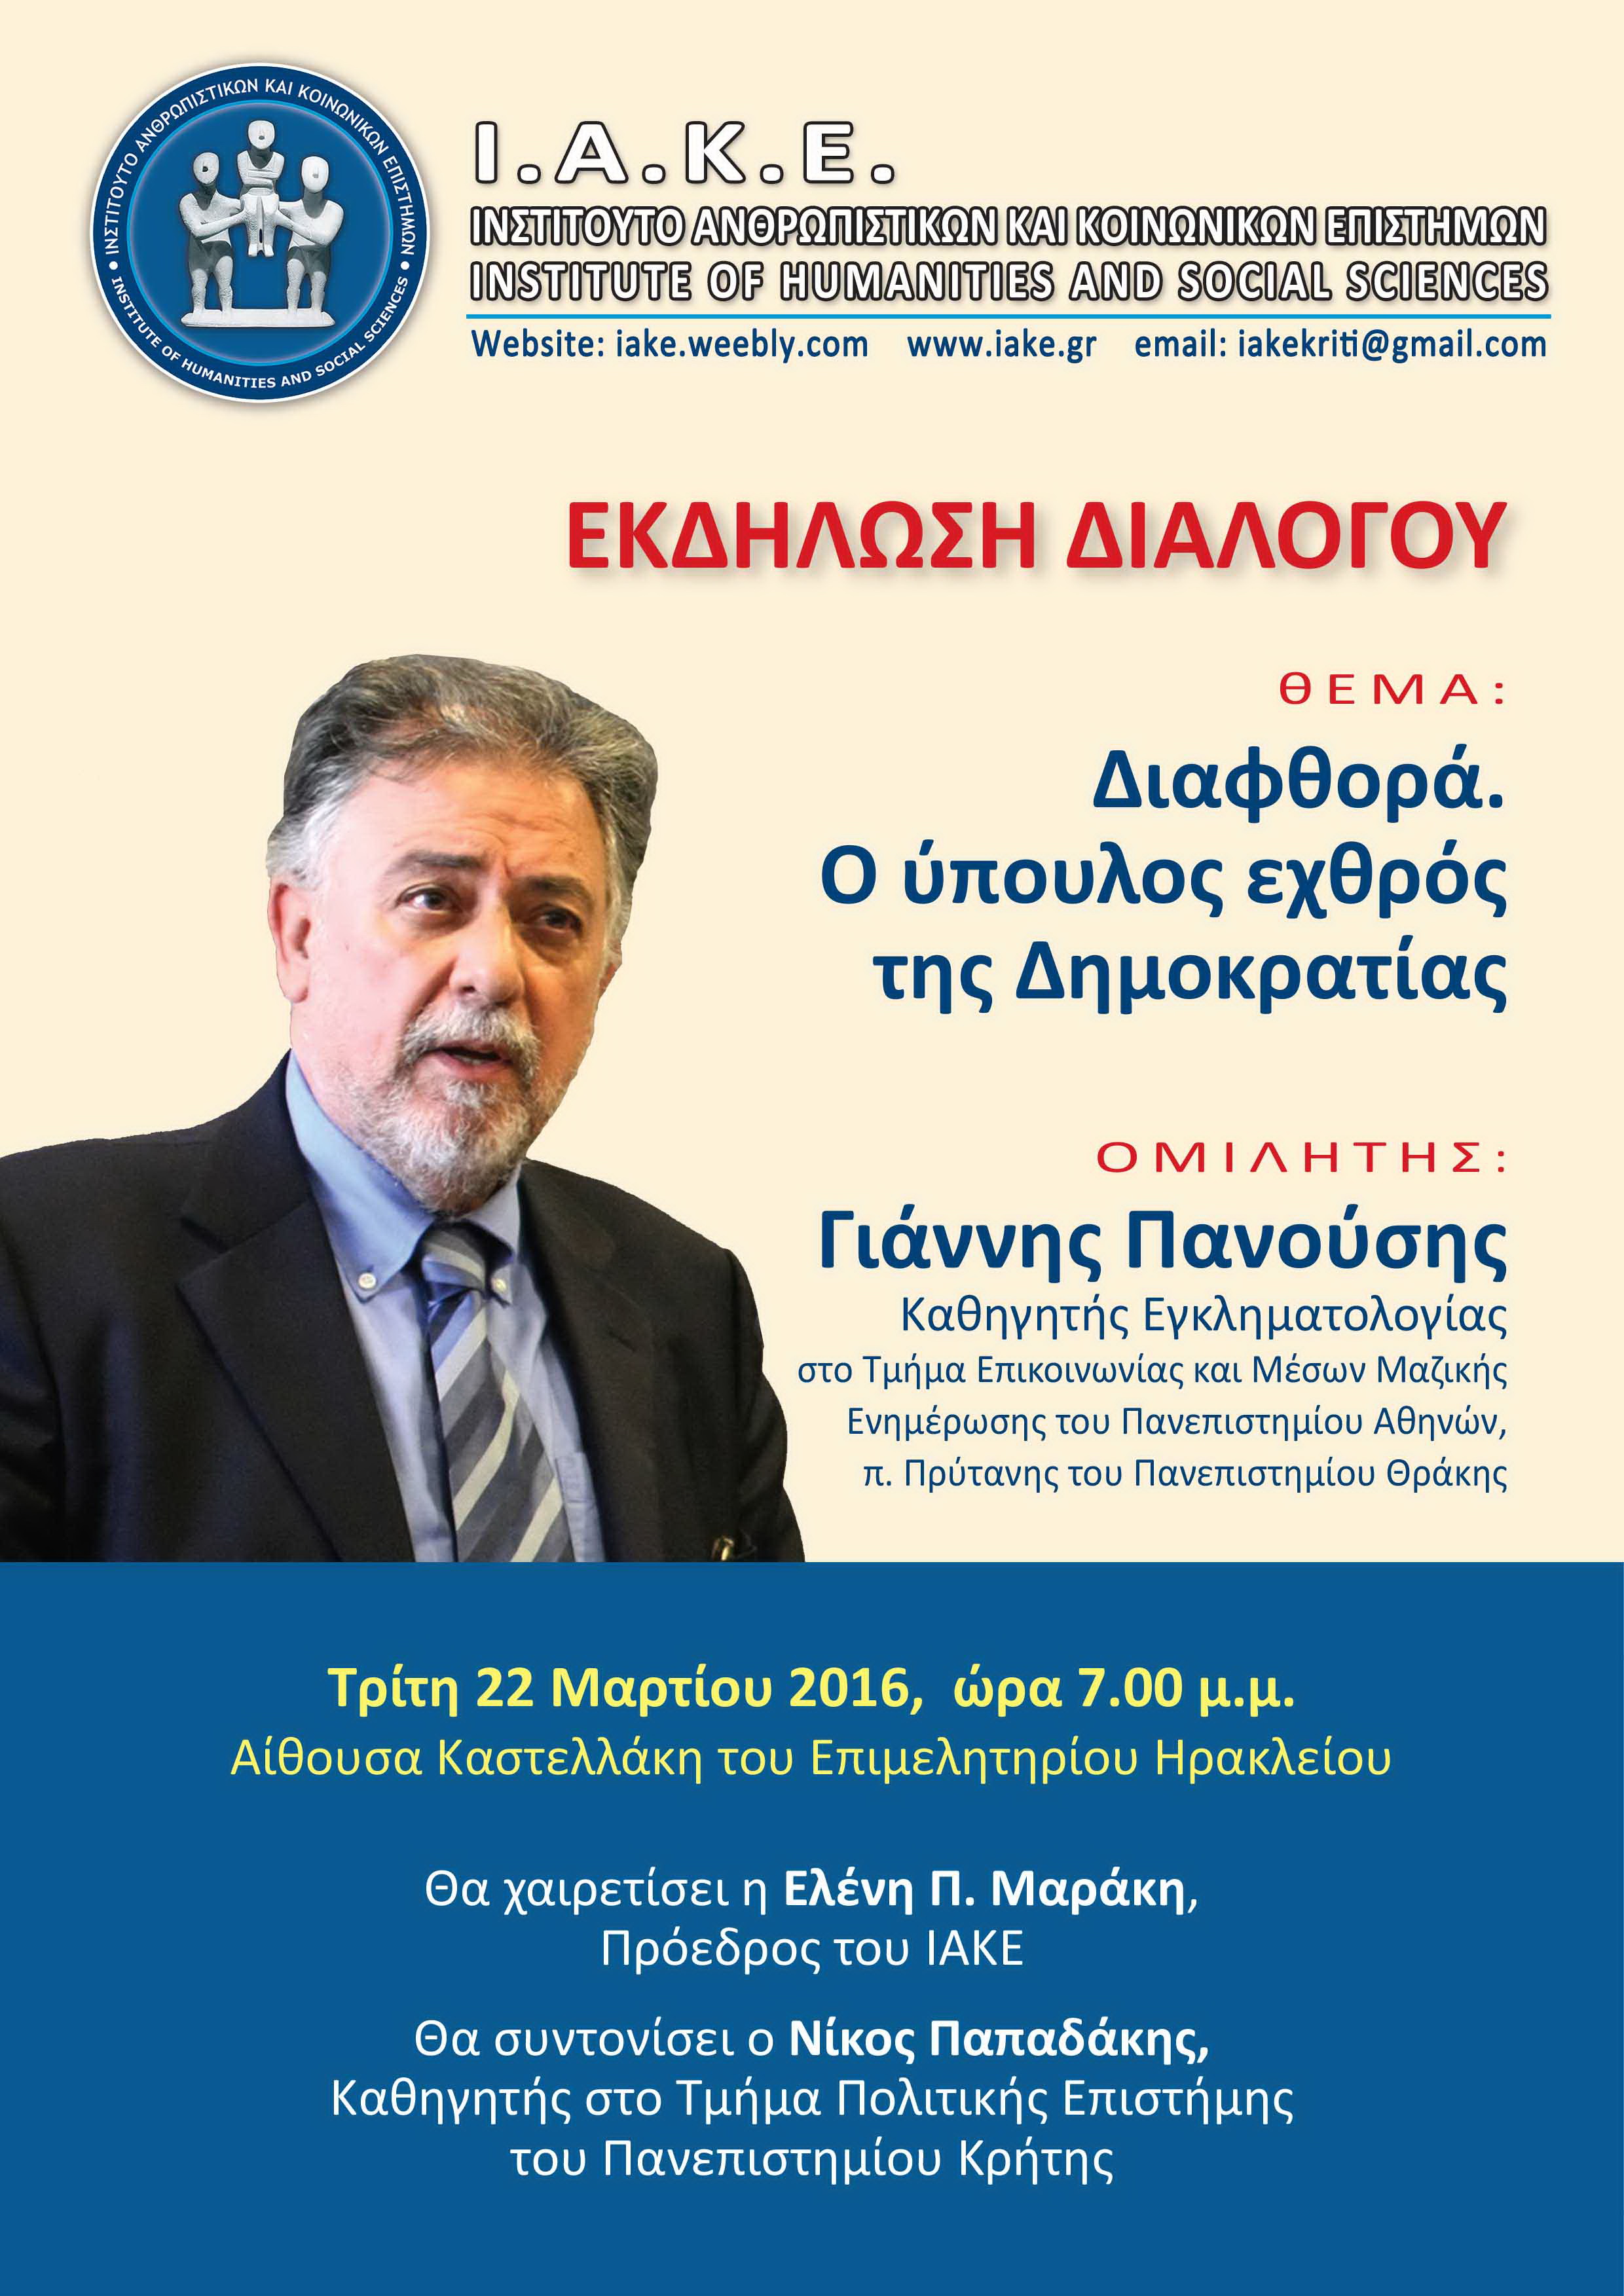 Ο Γιάννης Πανούσης ομιλητής στην Κρήτη σε διάλεξη για τη διαφθορά